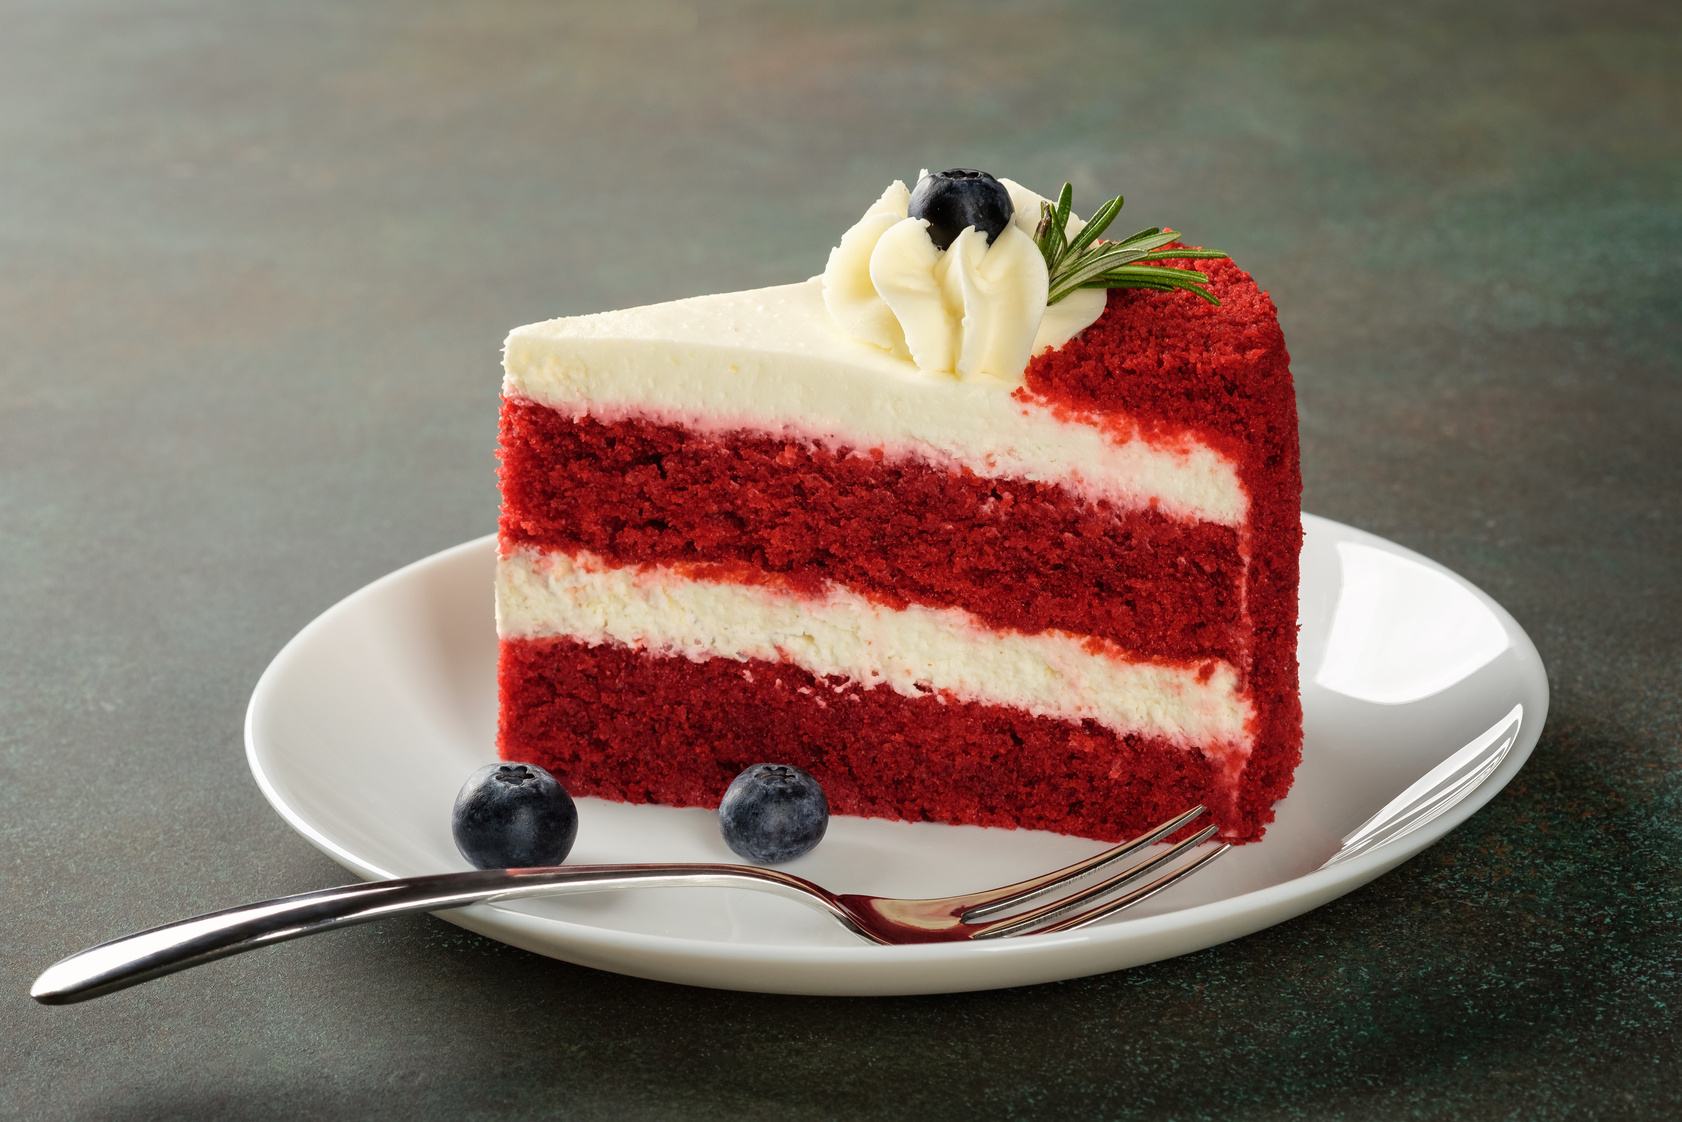 Red Velvet cake with blueberries on white plate over dark green background.